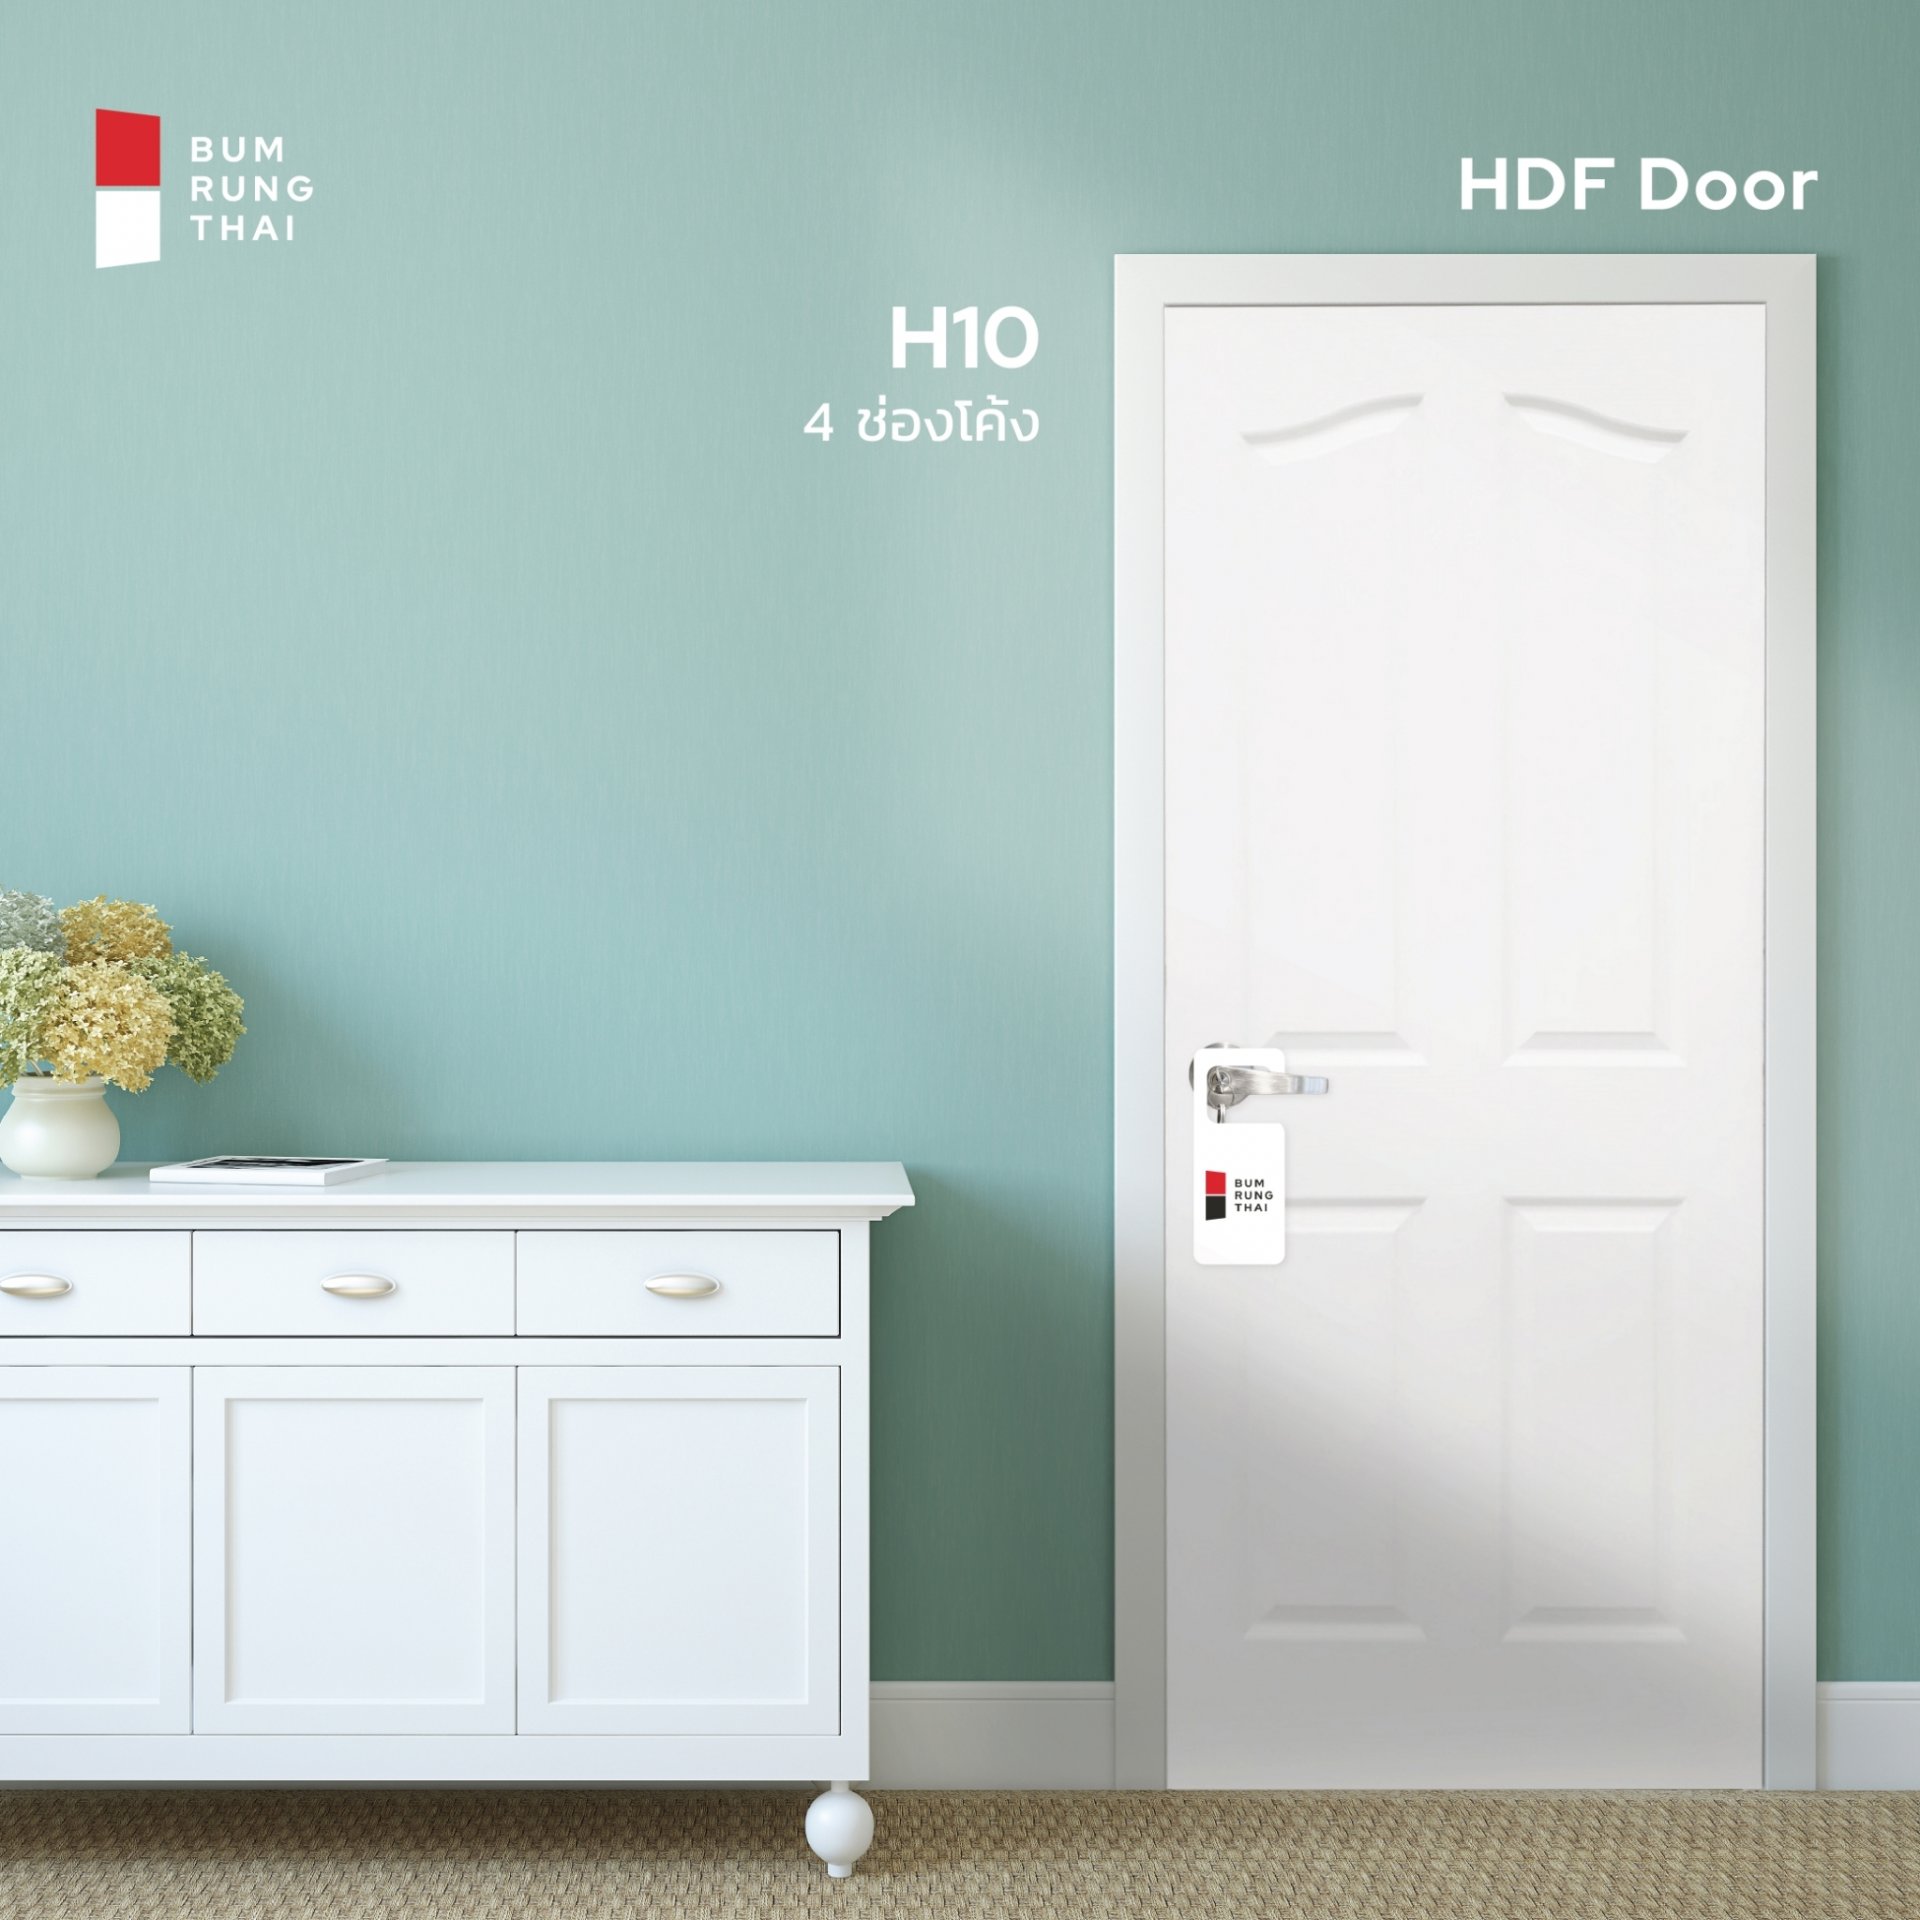 ประตู HDF (H10) 4 ช่องโค้ง